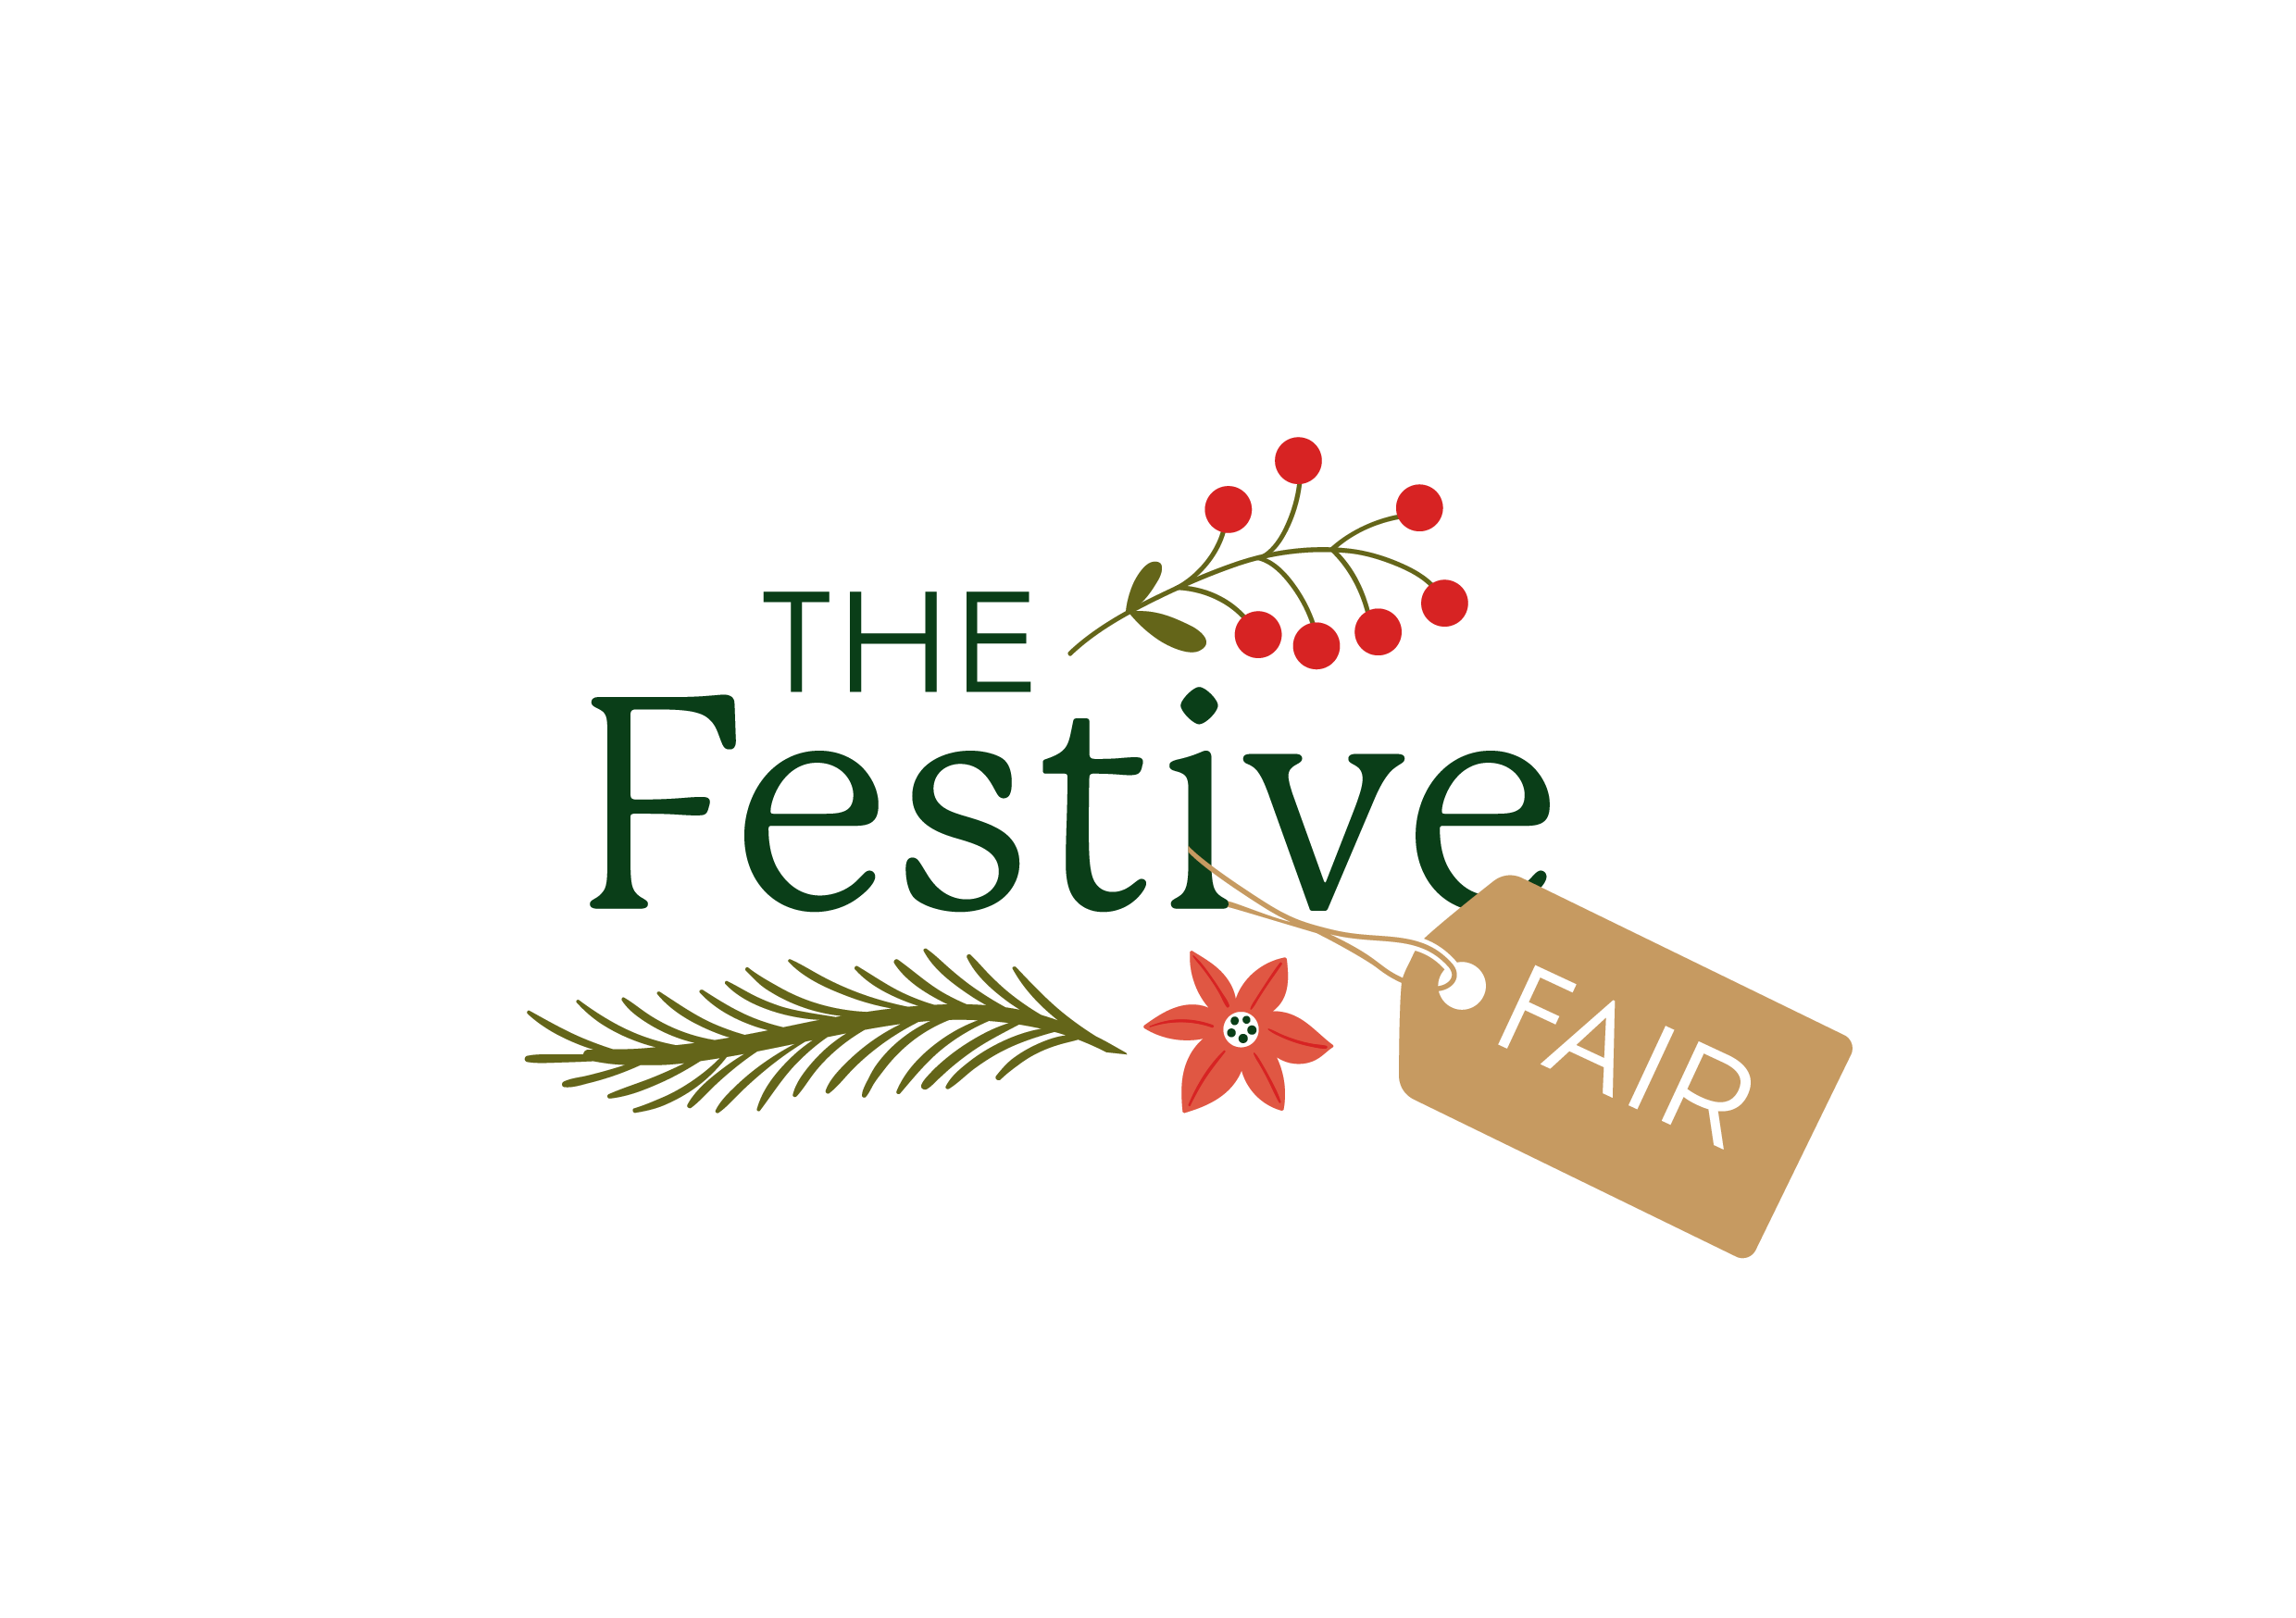 The Festive Fair